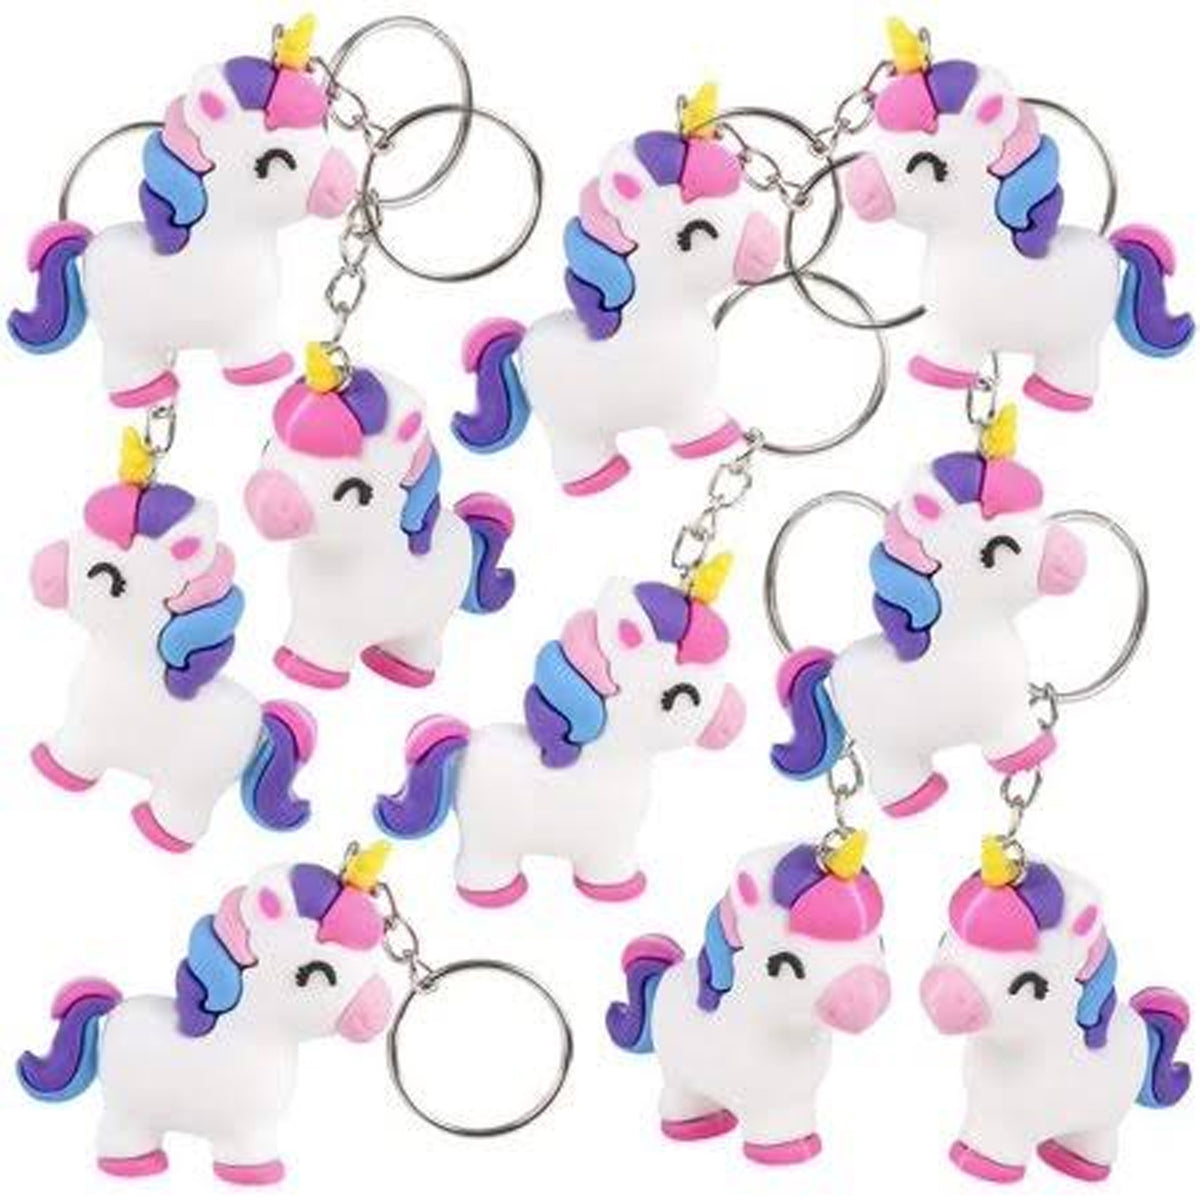 Unicorn Keychain Kids Toys